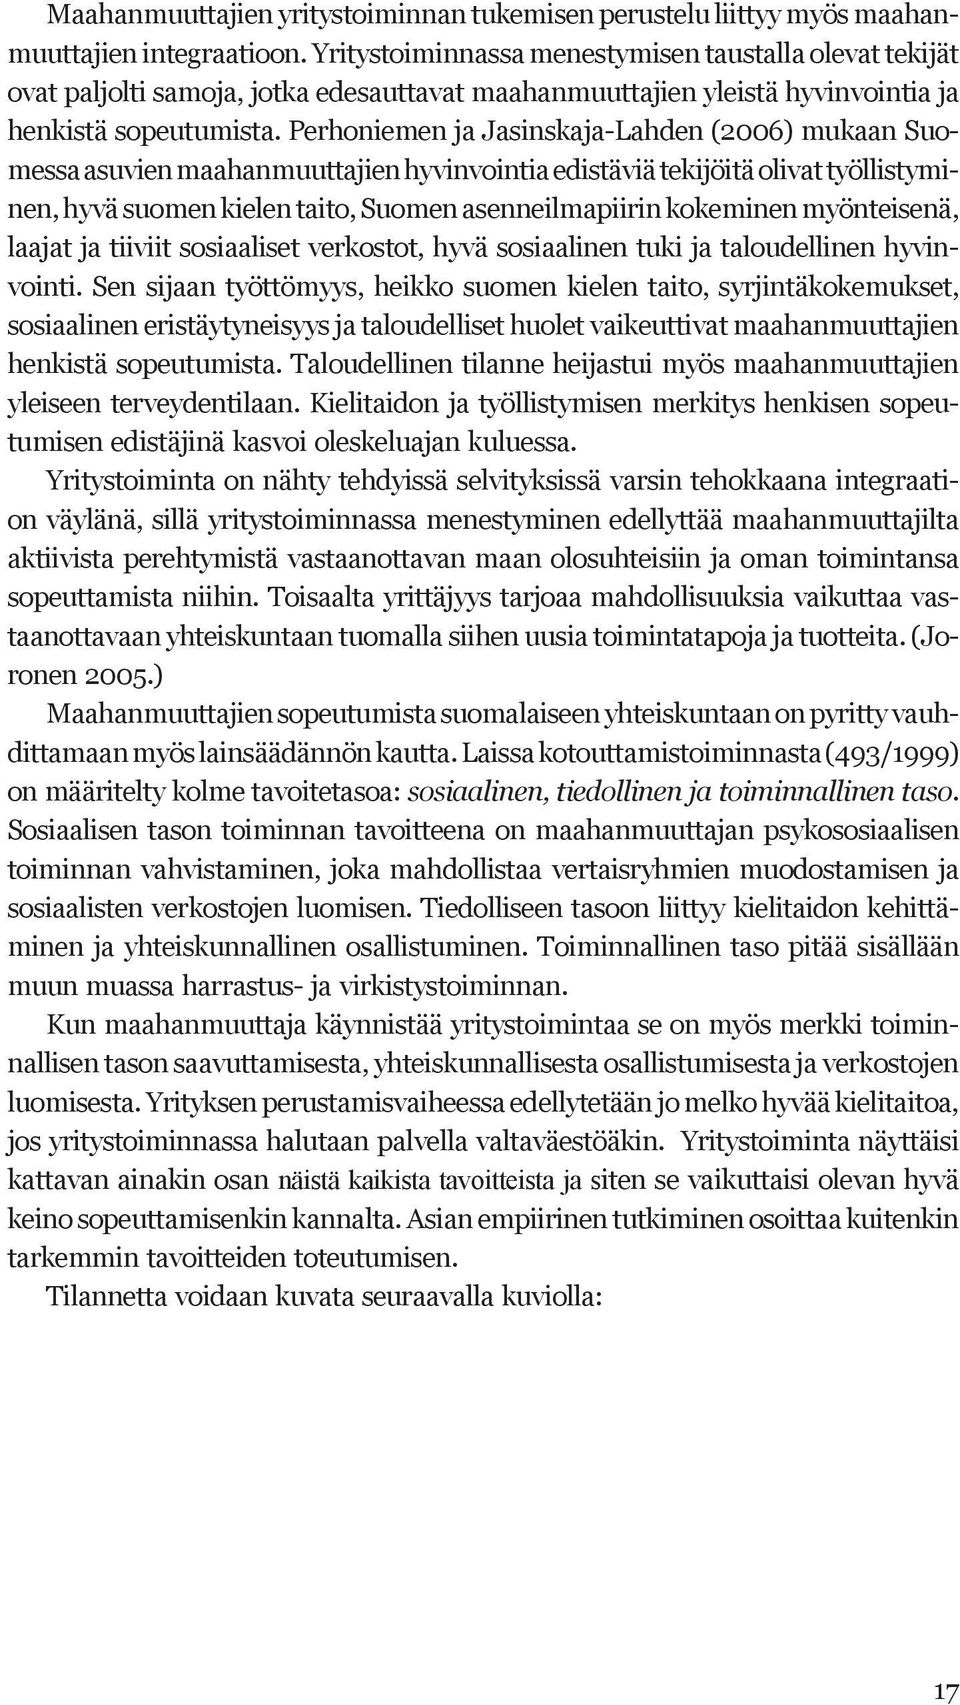 Perhoniemen ja Jasinskaja-Lahden (2006) mukaan Suomessa asuvien maahanmuuttajien hyvinvointia edistäviä tekijöitä olivat työllistyminen, hyvä suomen kielen taito, Suomen asenneilmapiirin kokeminen